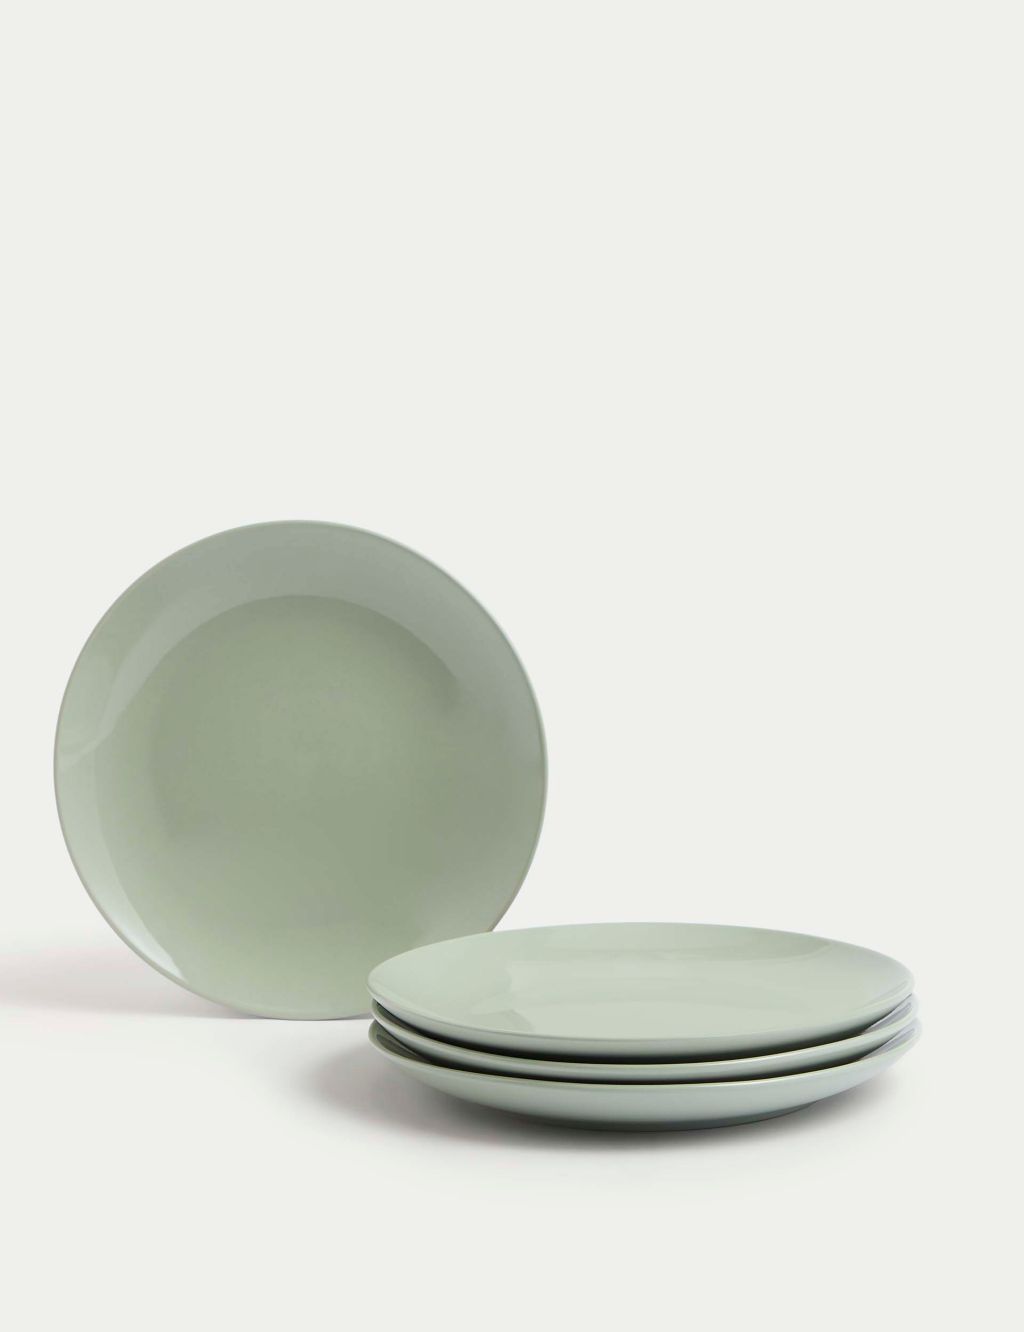 Set of 4 Everyday Stoneware Side Plates